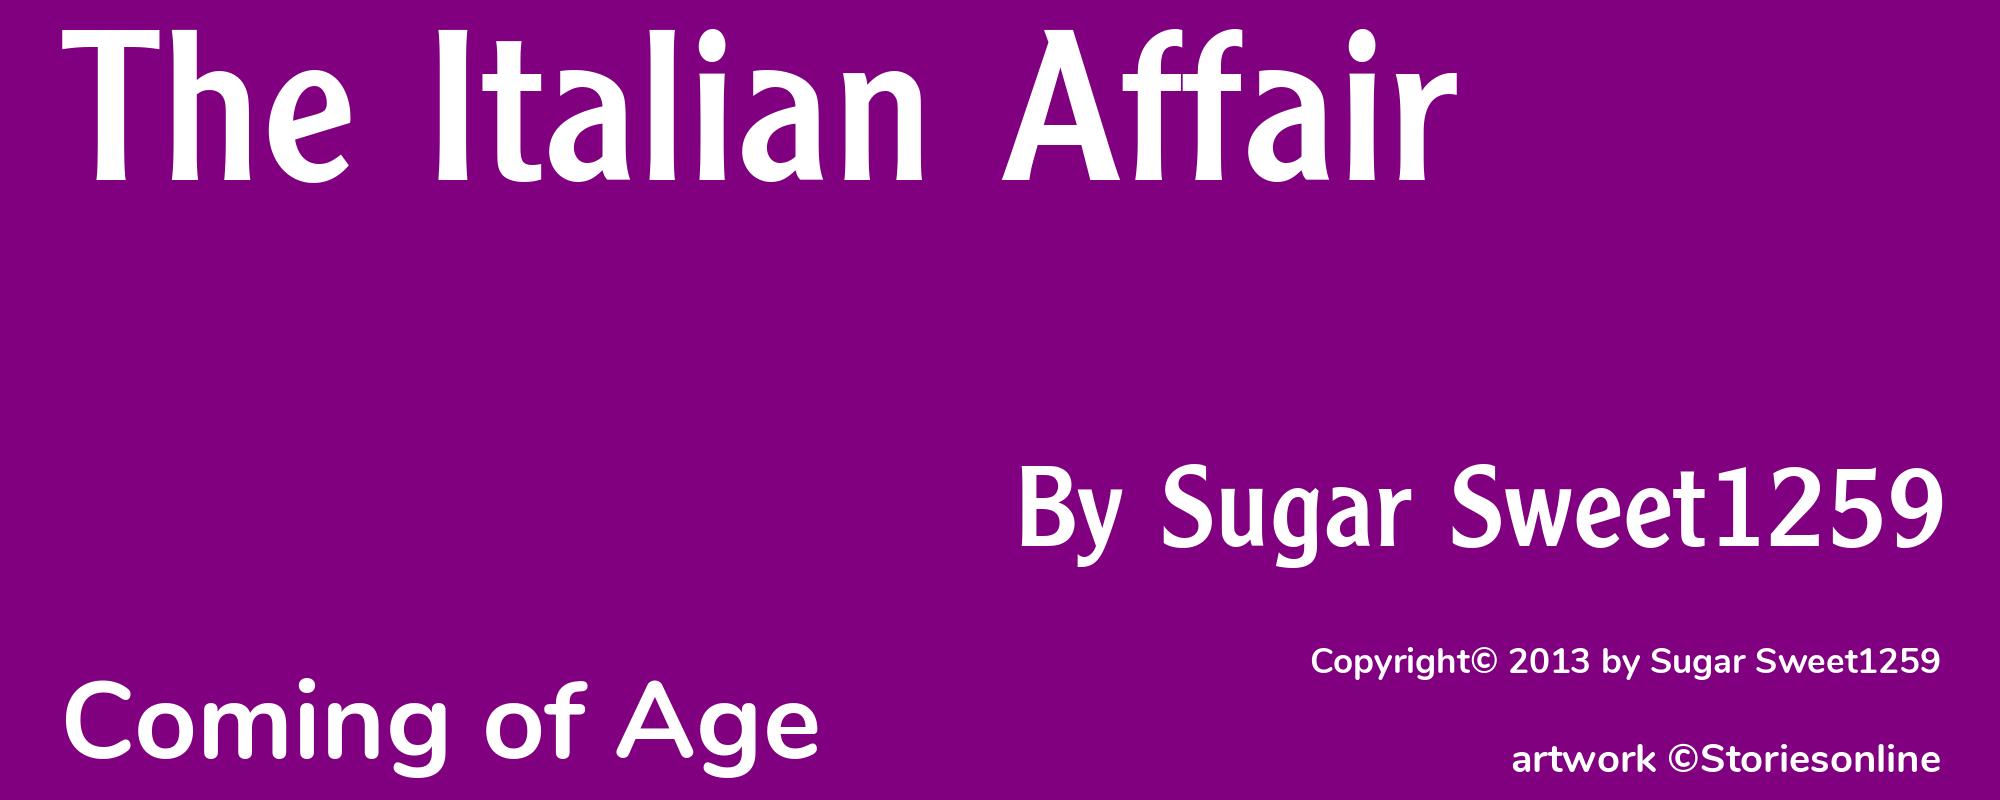 The Italian Affair - Cover